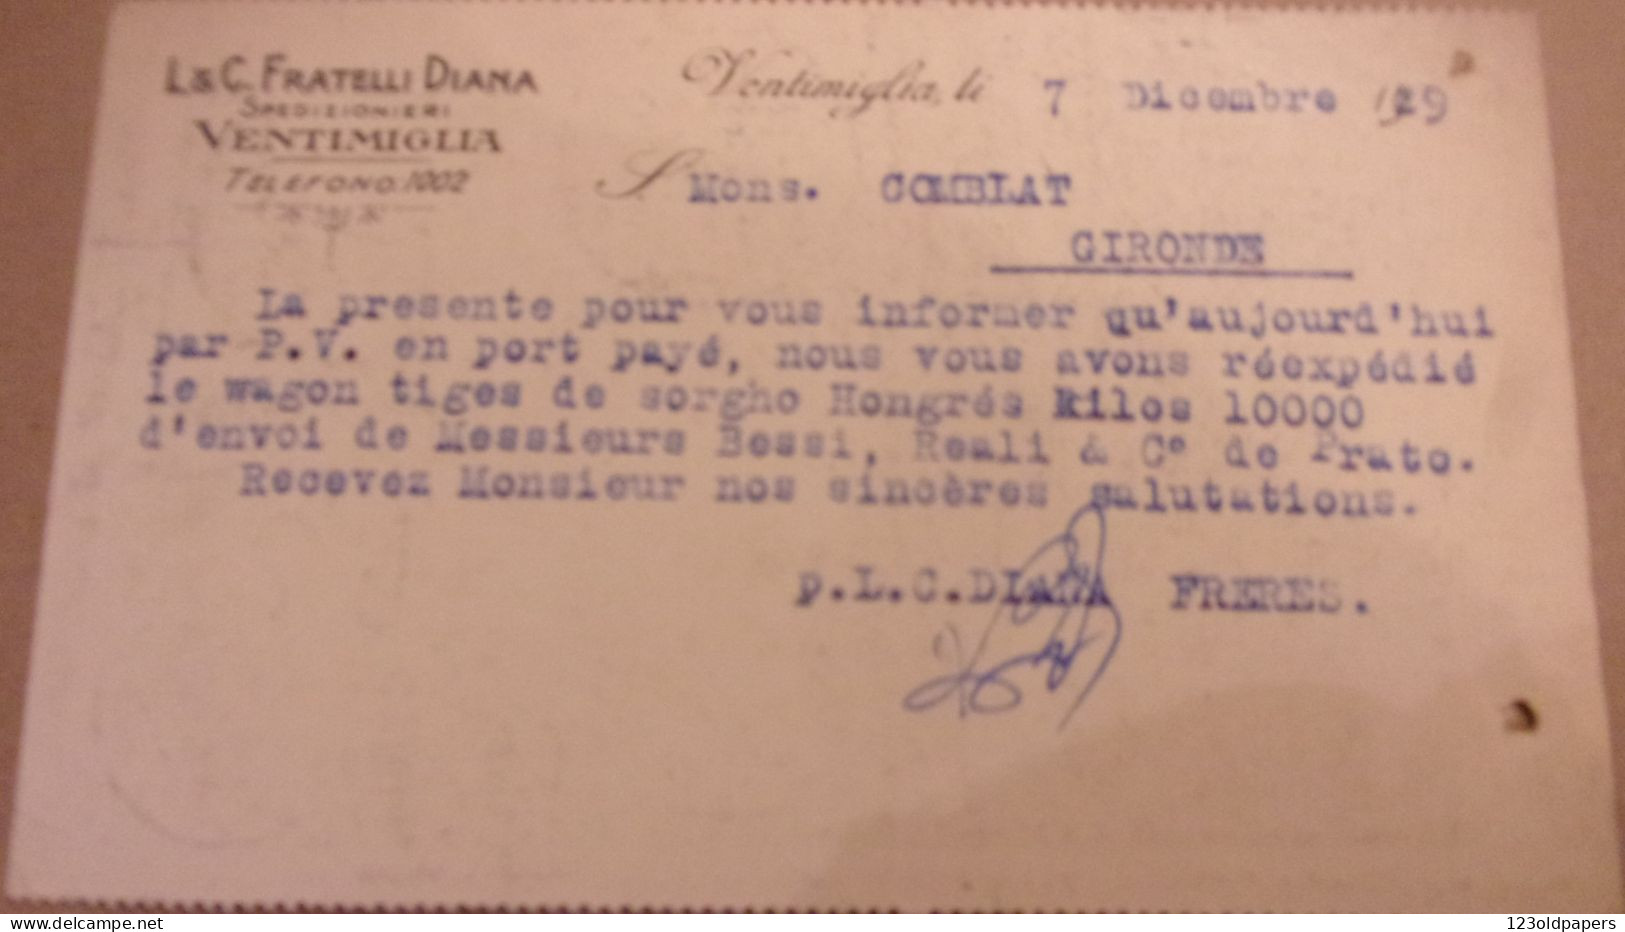 VENTIMIGLIA - IMPERIA - CARTOLINA COMMERCIALE "L.& C. FRATELLI DIANA" TRASPORTI INTERNAZIONALI - 1929 - Marcophilie